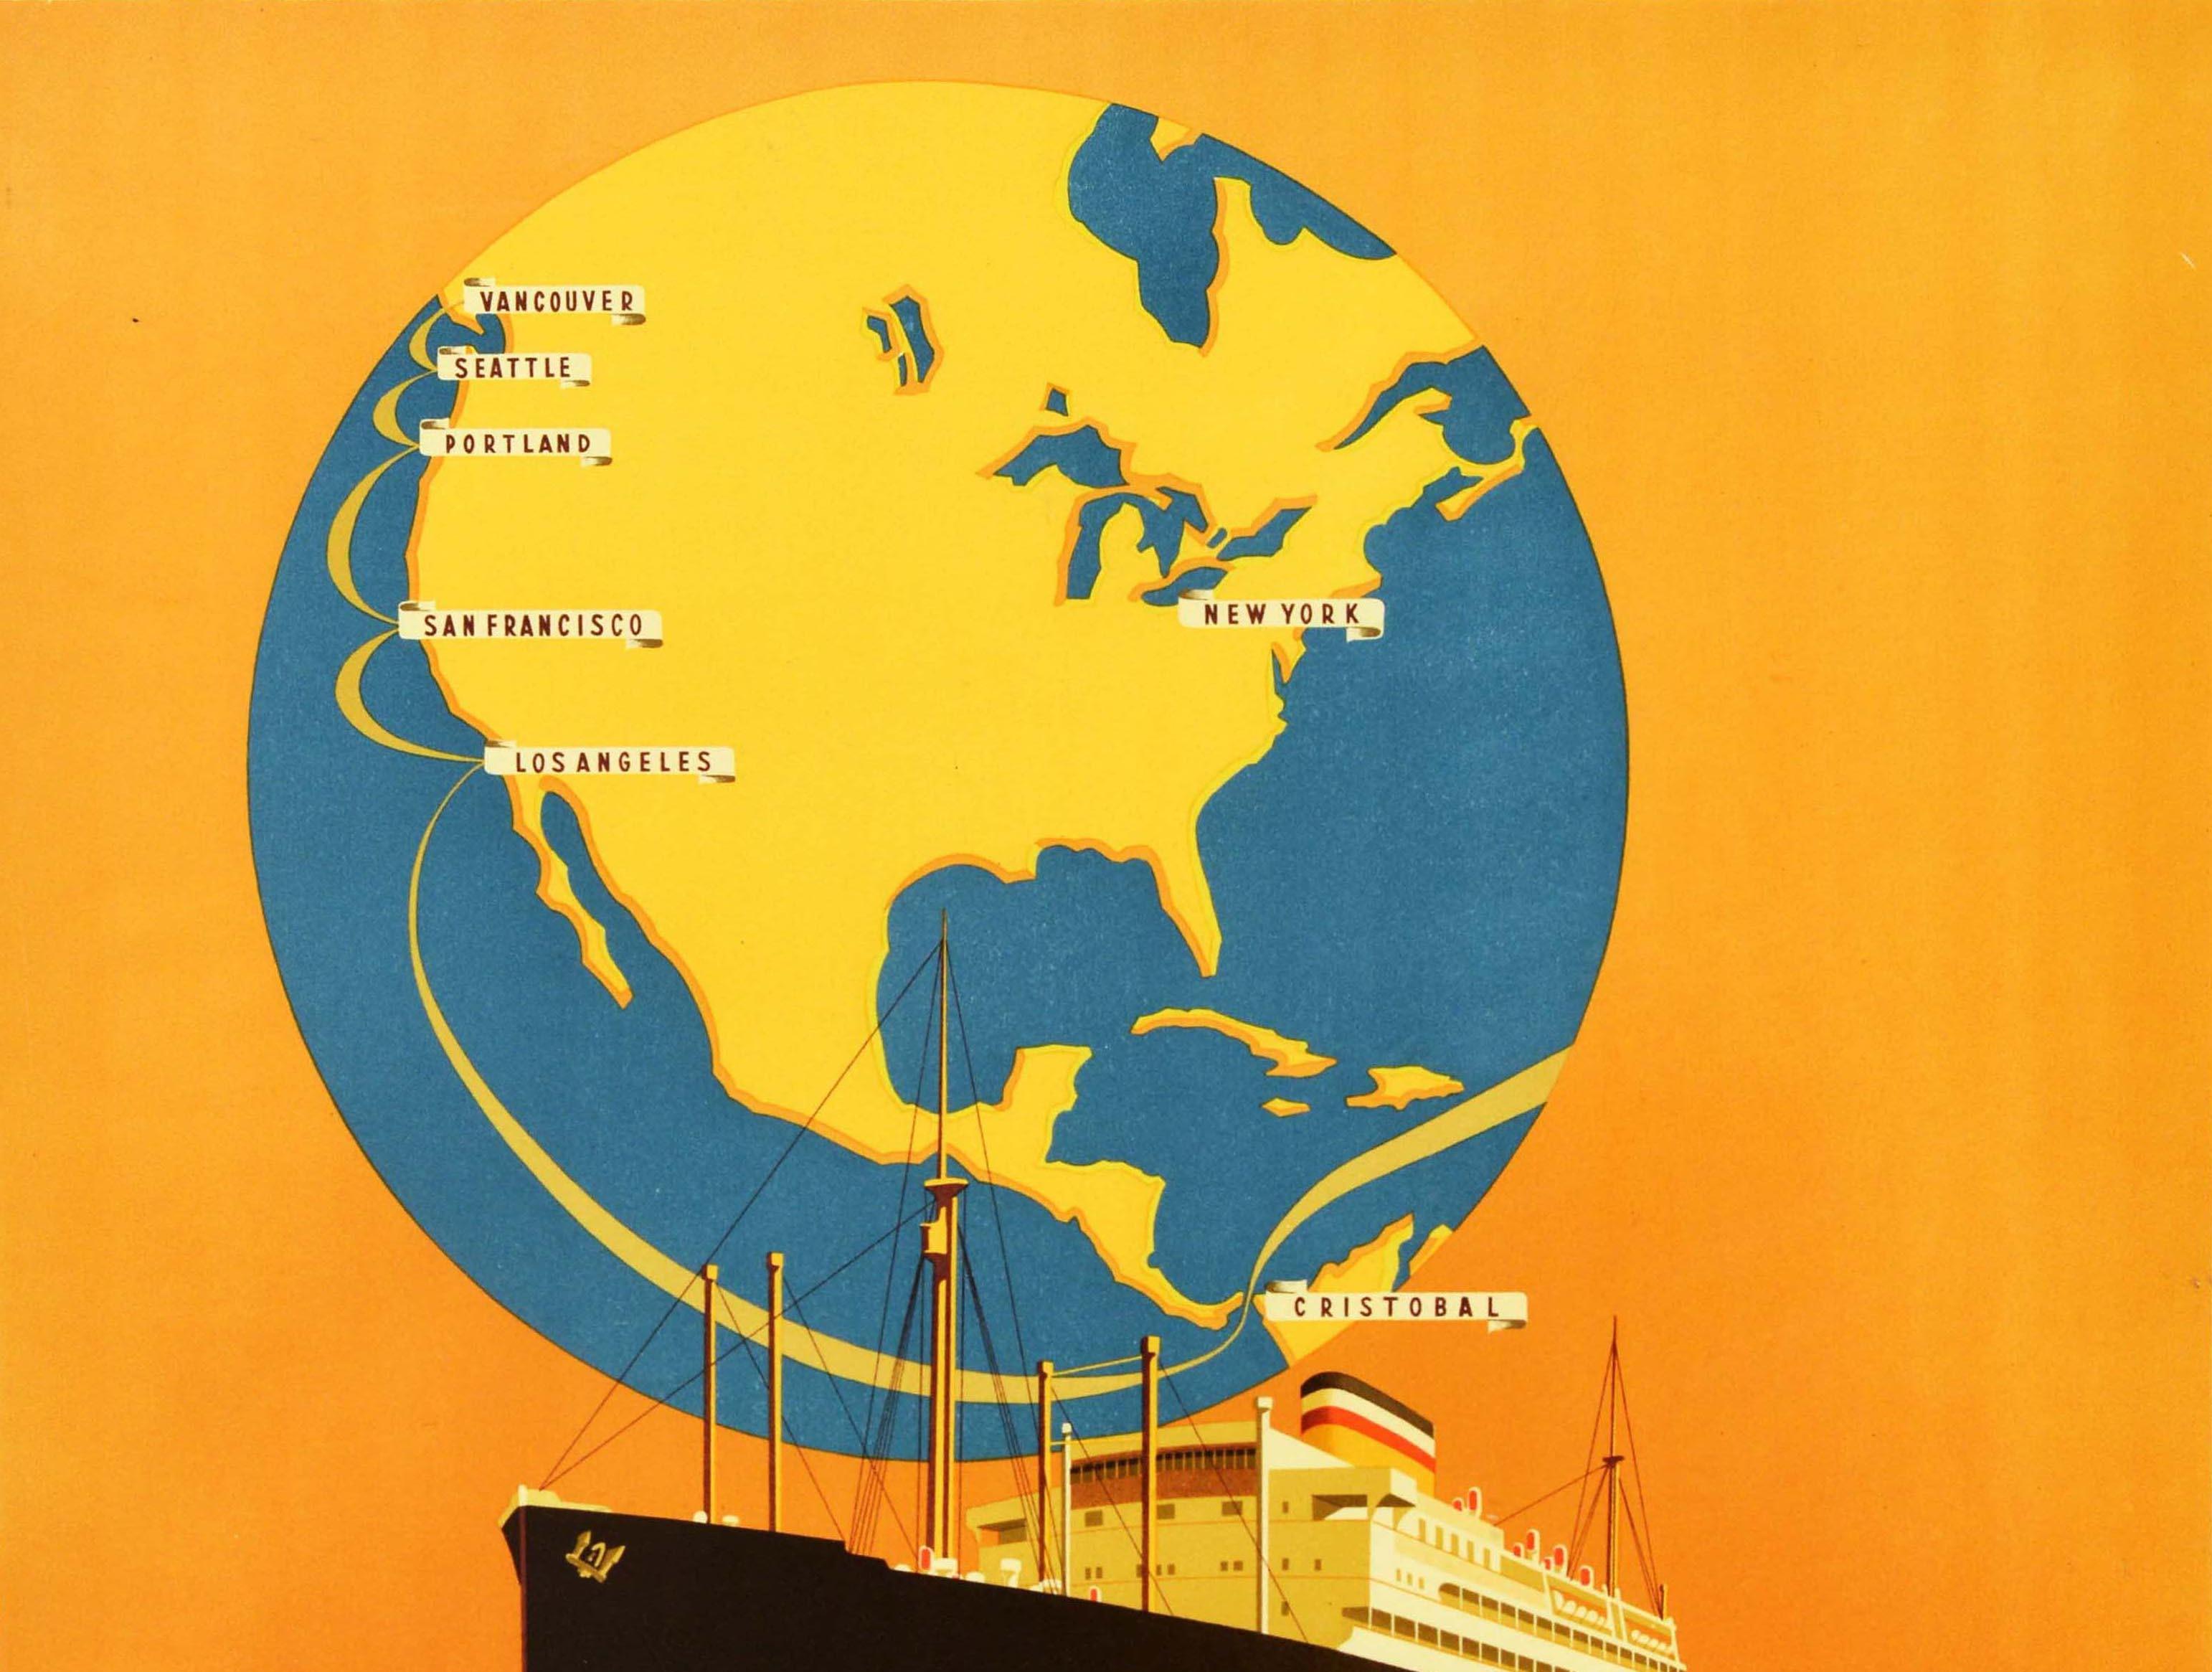 Affiche de voyage originale d'époque annonçant les croisières de la Hamburg America Line directement vers Los Angeles San Francisco, représentant un paquebot élégant naviguant en mer devant un globe du monde marqué de New York et des noms de villes